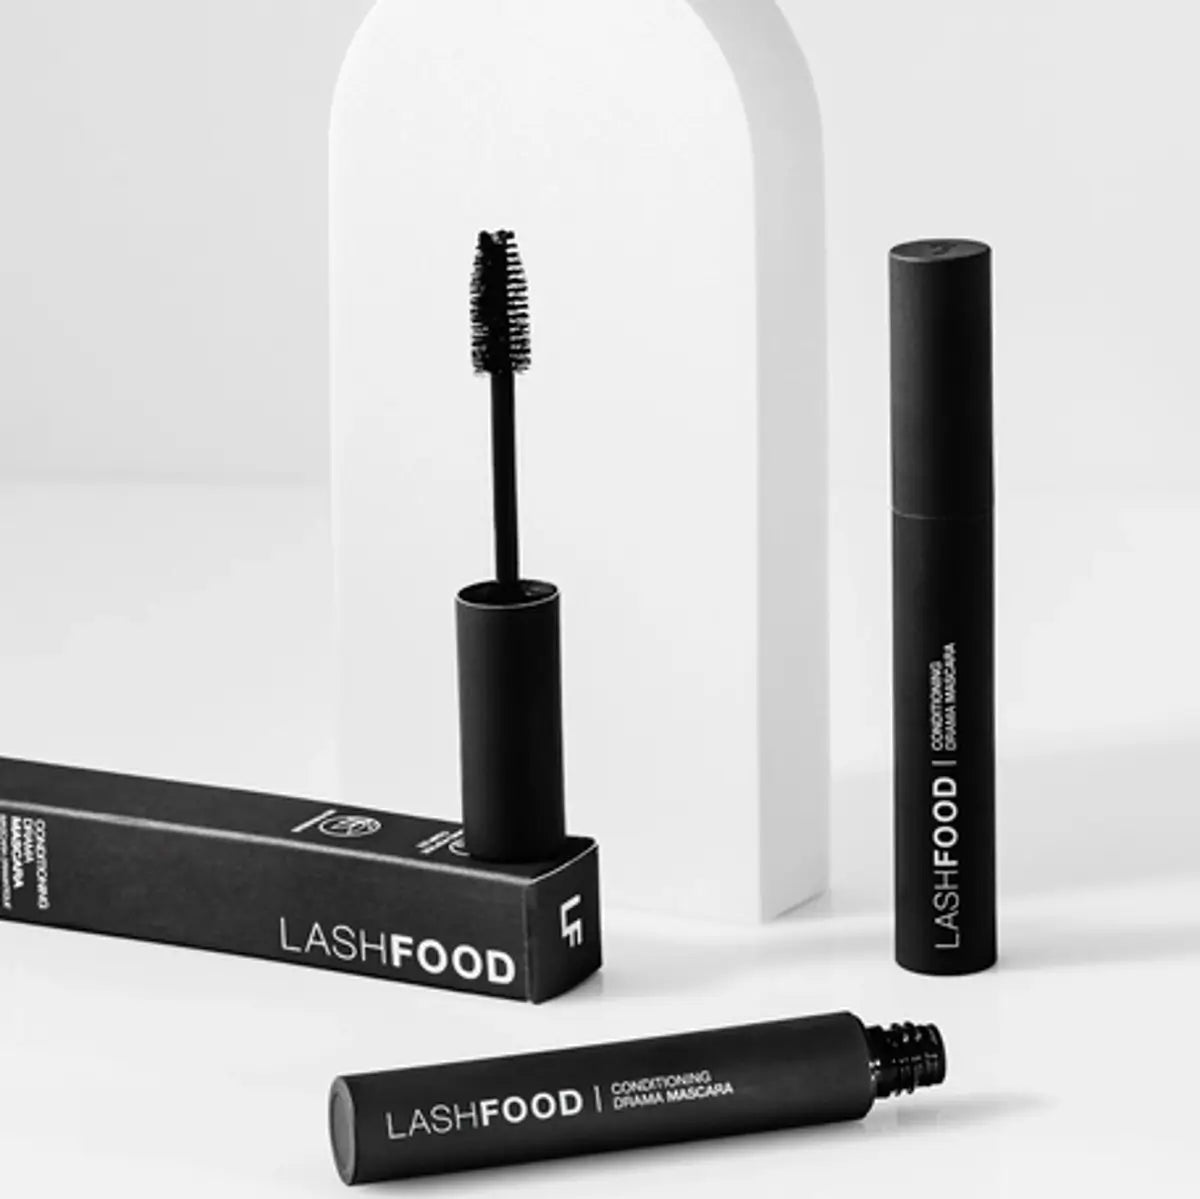 Lashfood Mascara - black mascara in 8 ml tube with extra large bristle brush